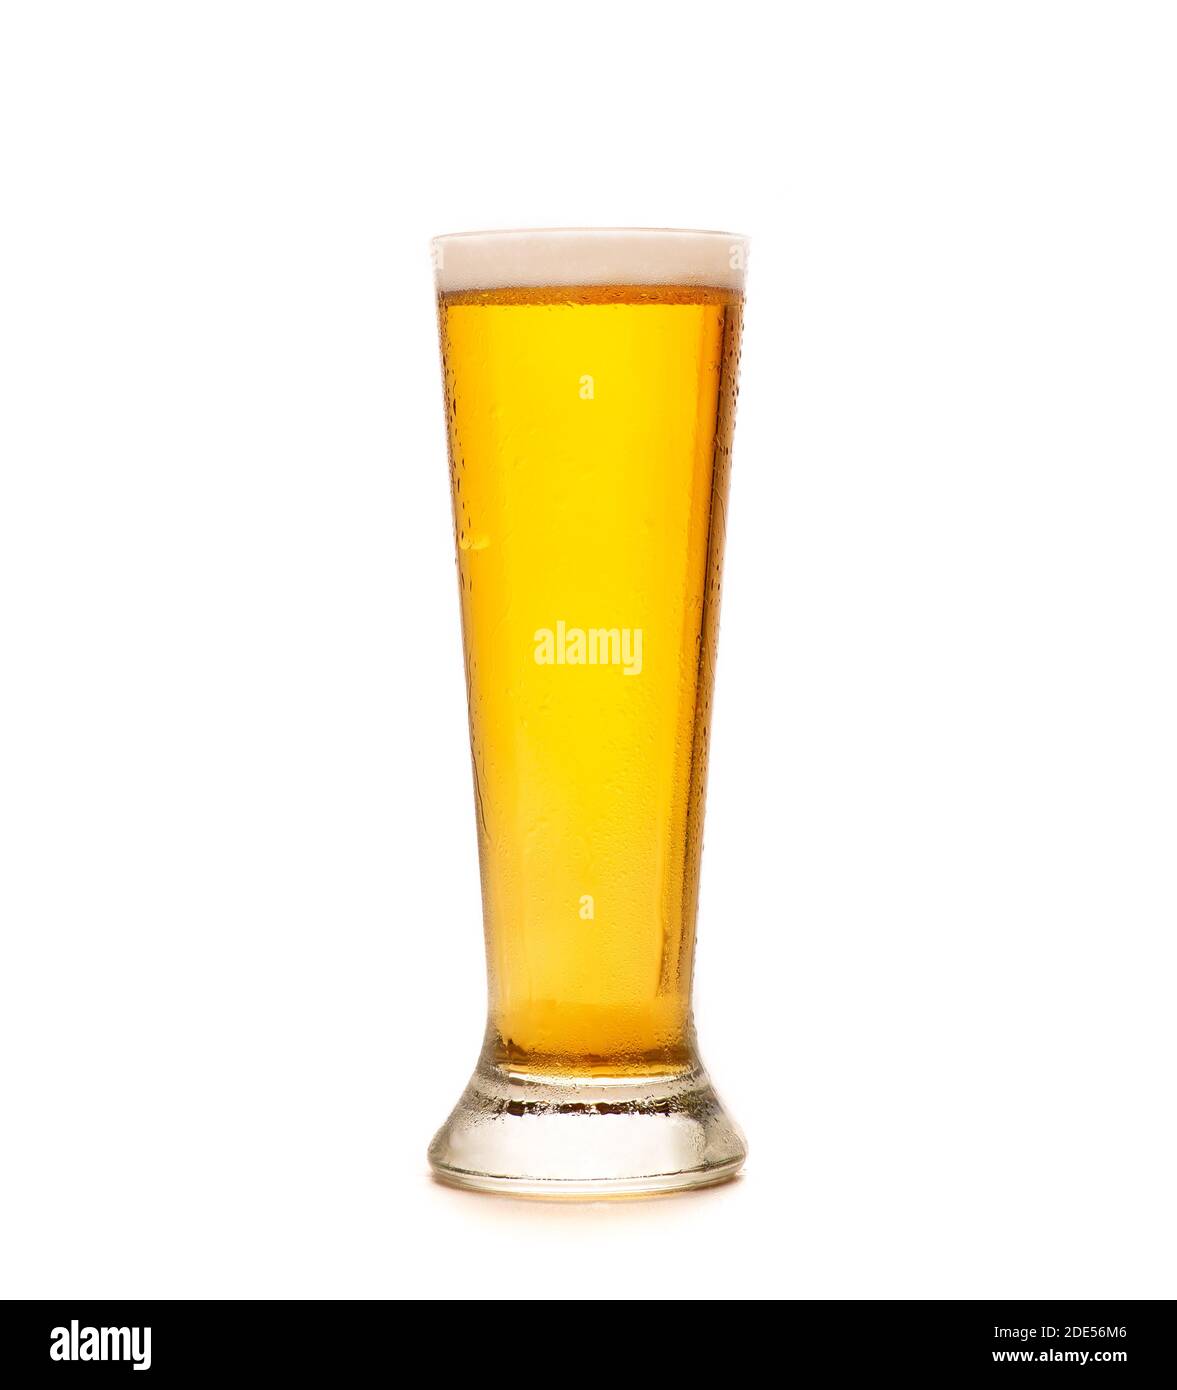 Business birra, bevanda preferita in pub e festival dell'alcol Foto Stock